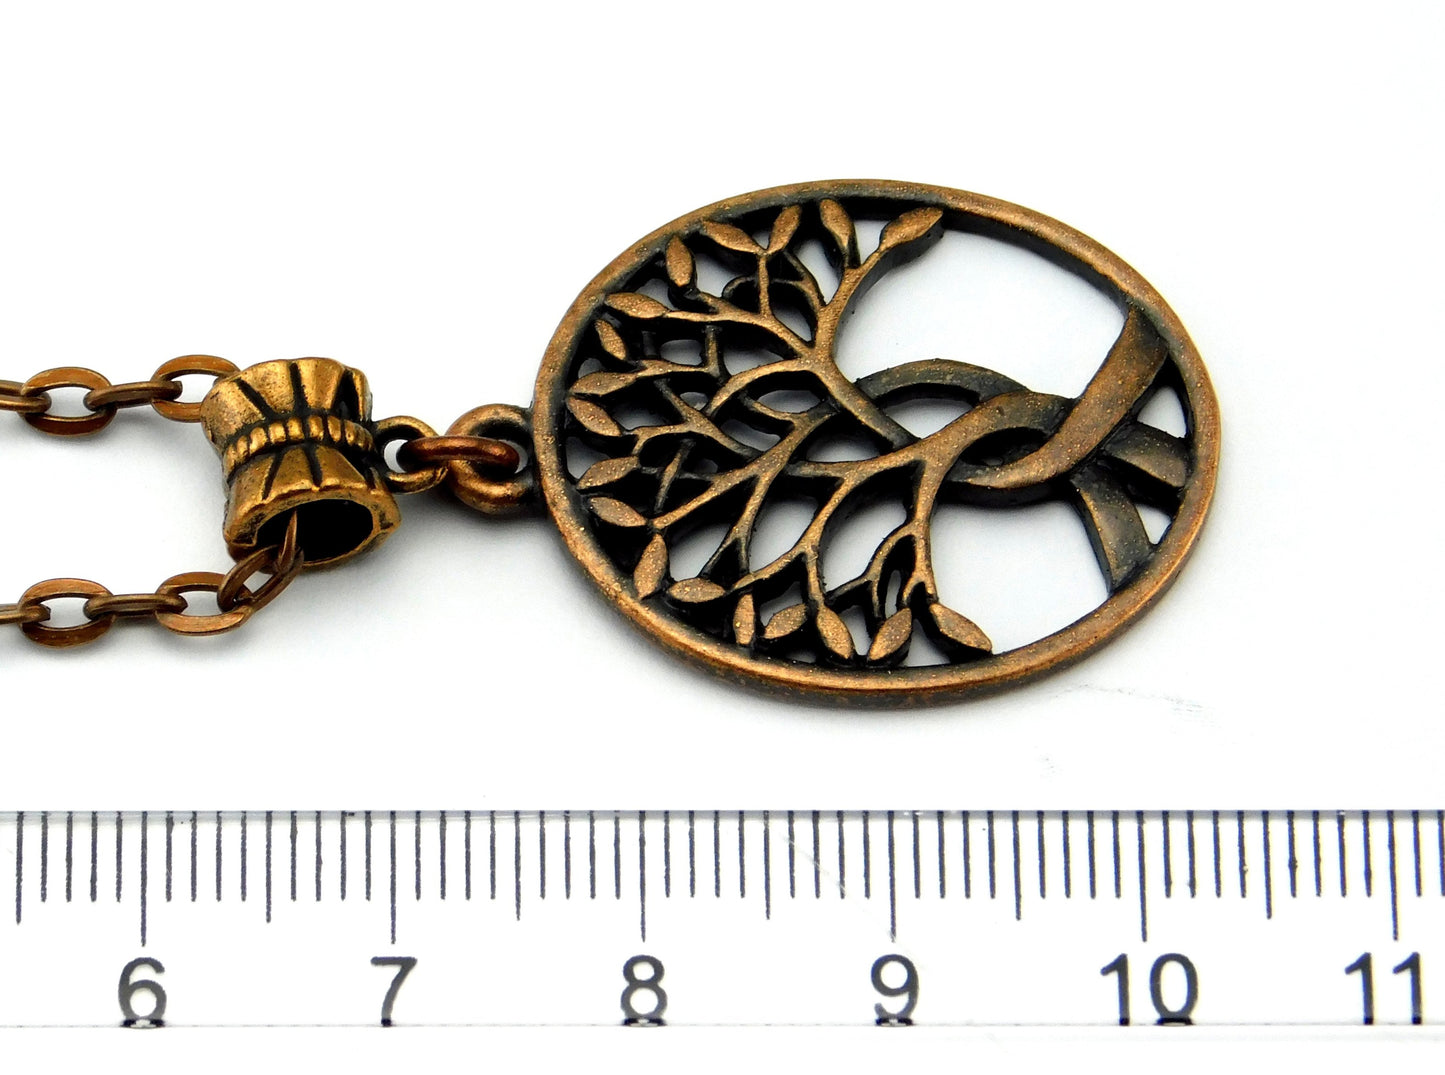 Kupferfarbene Halskette "Lebensbaum"